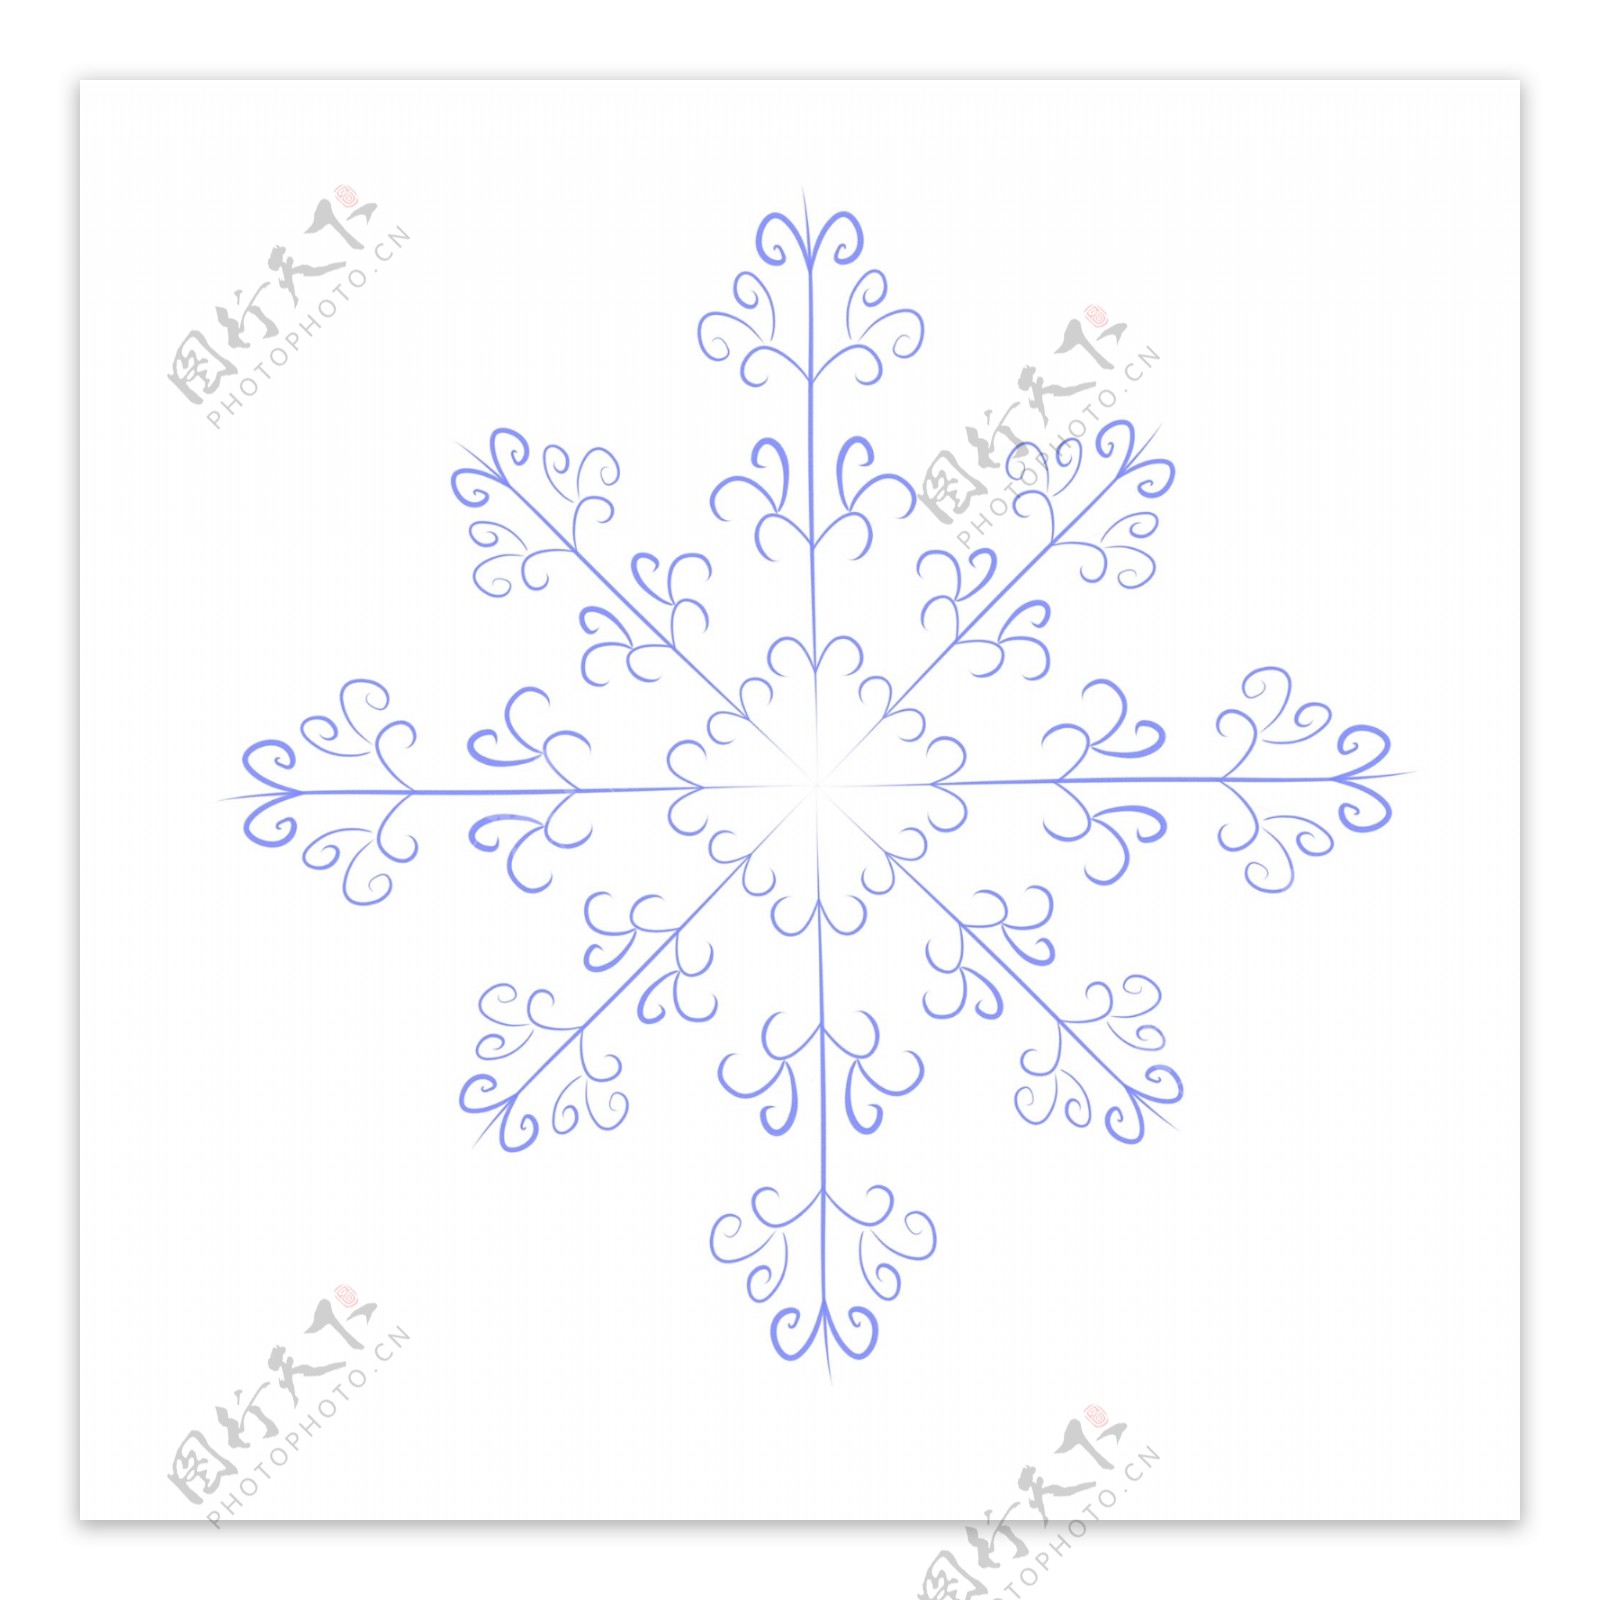 手绘小清新冬日蓝色雪花可商用装饰元素